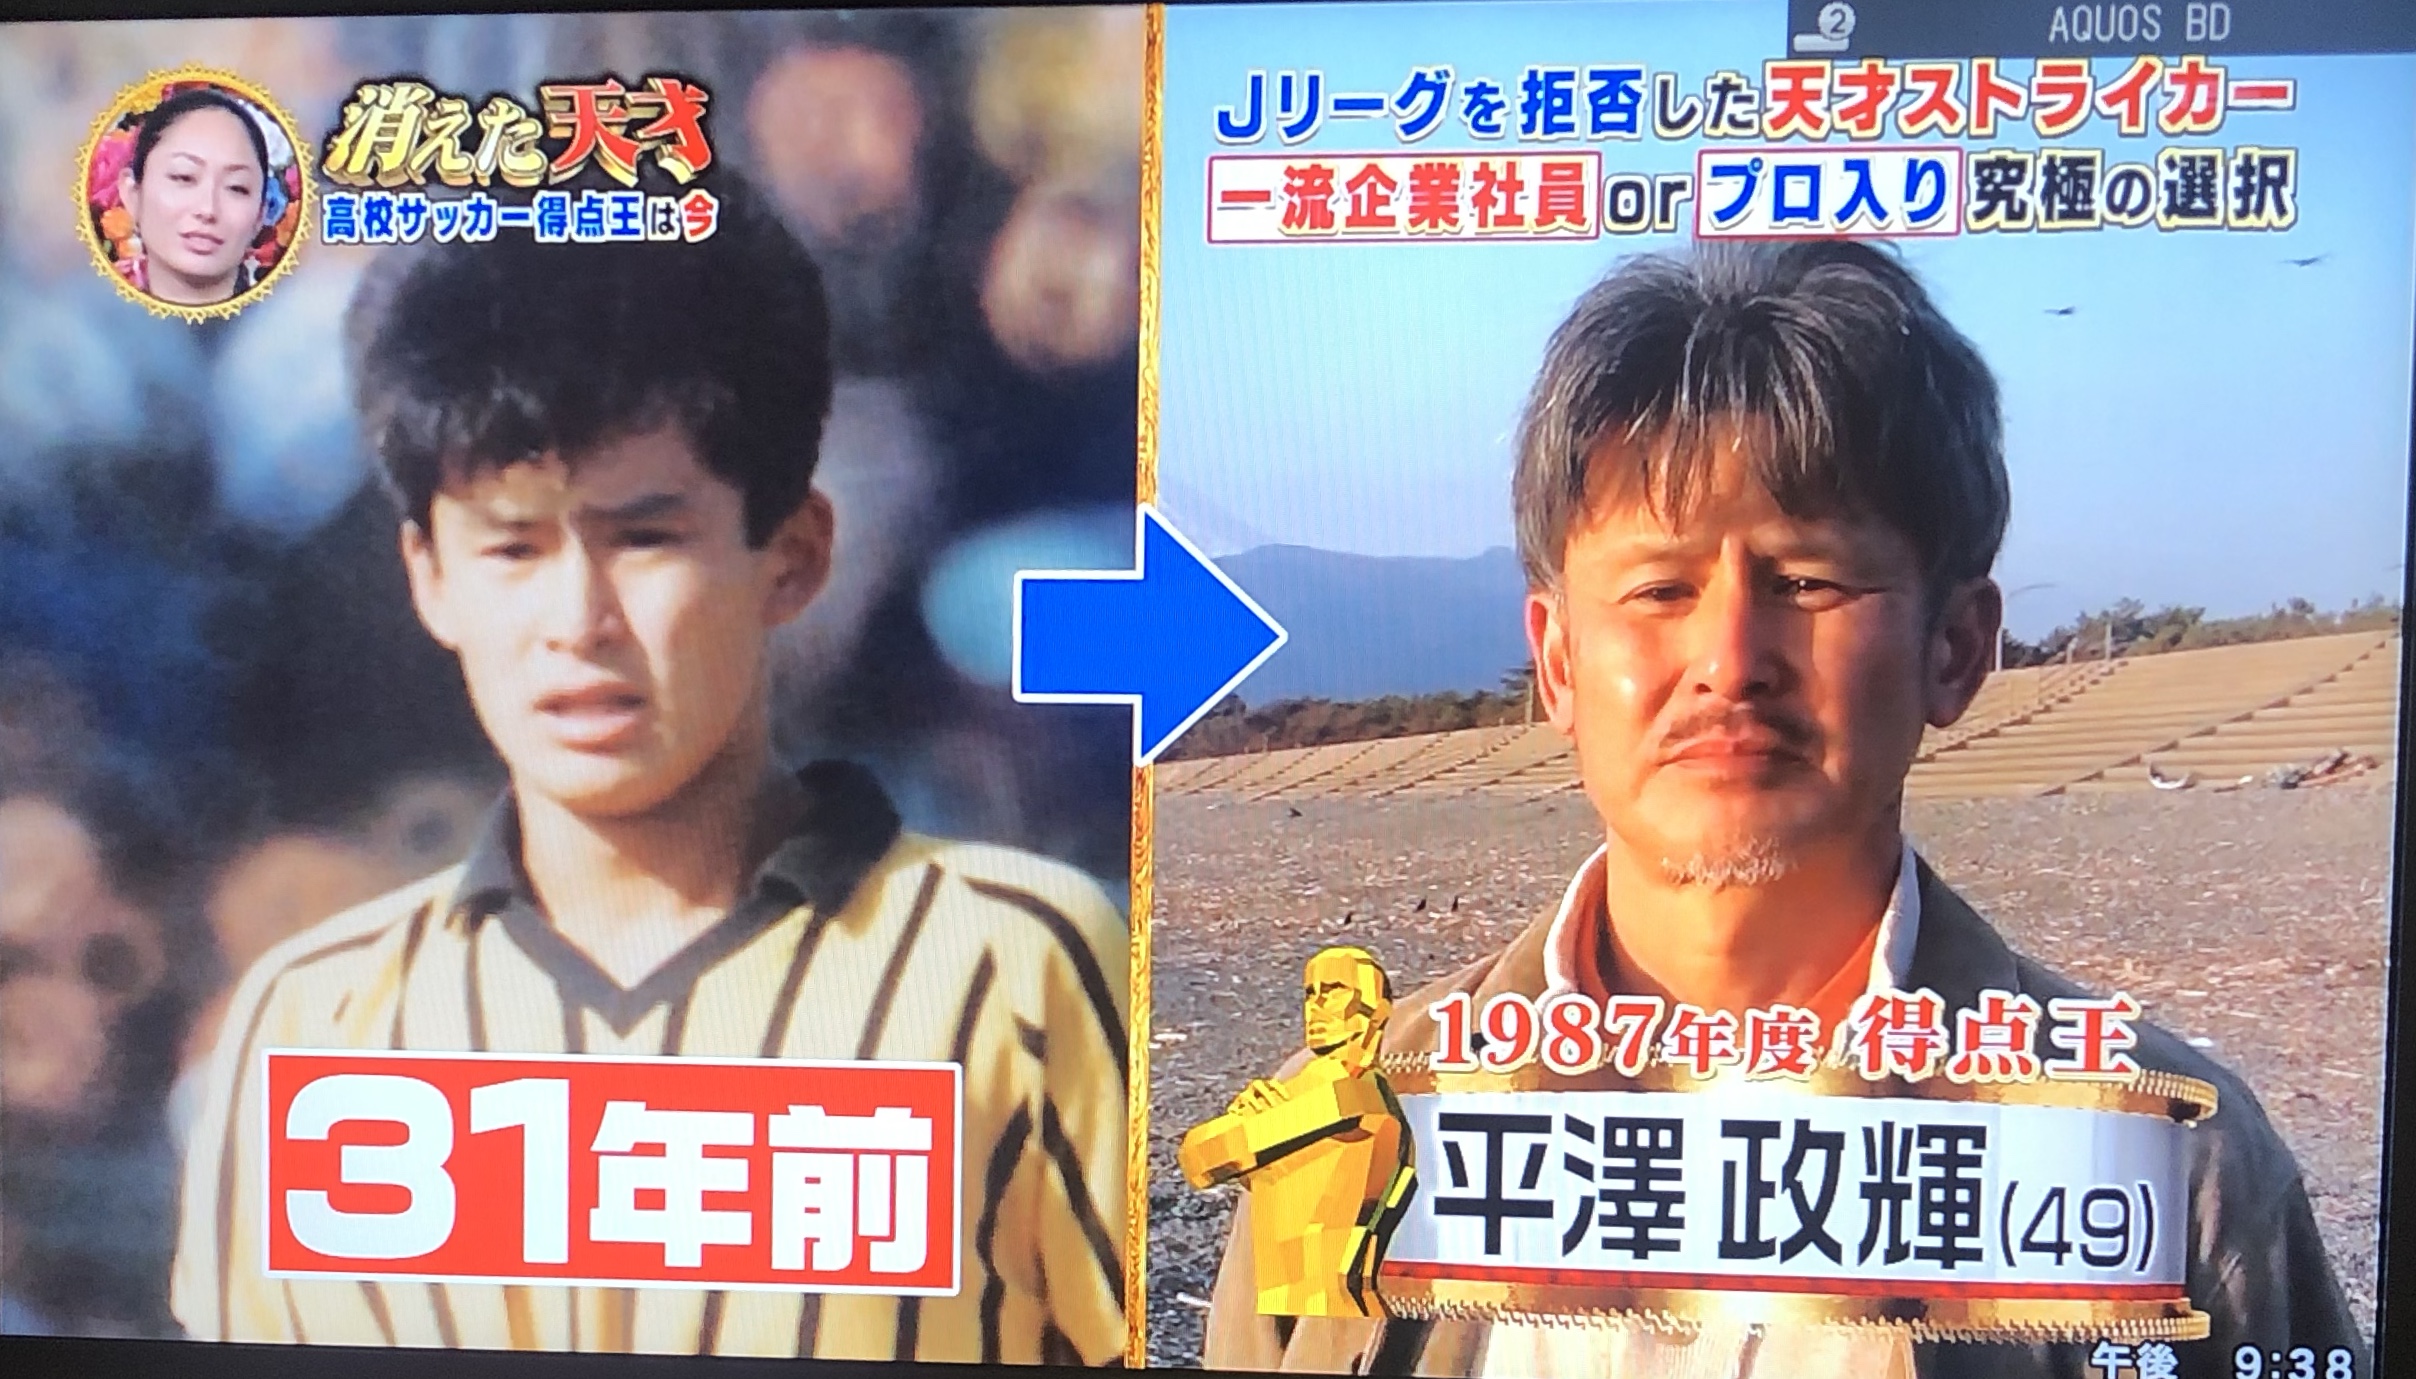 小松晃の現在の顔画像やサッカー監督 消えた理由やwiki経歴は 消えた天才